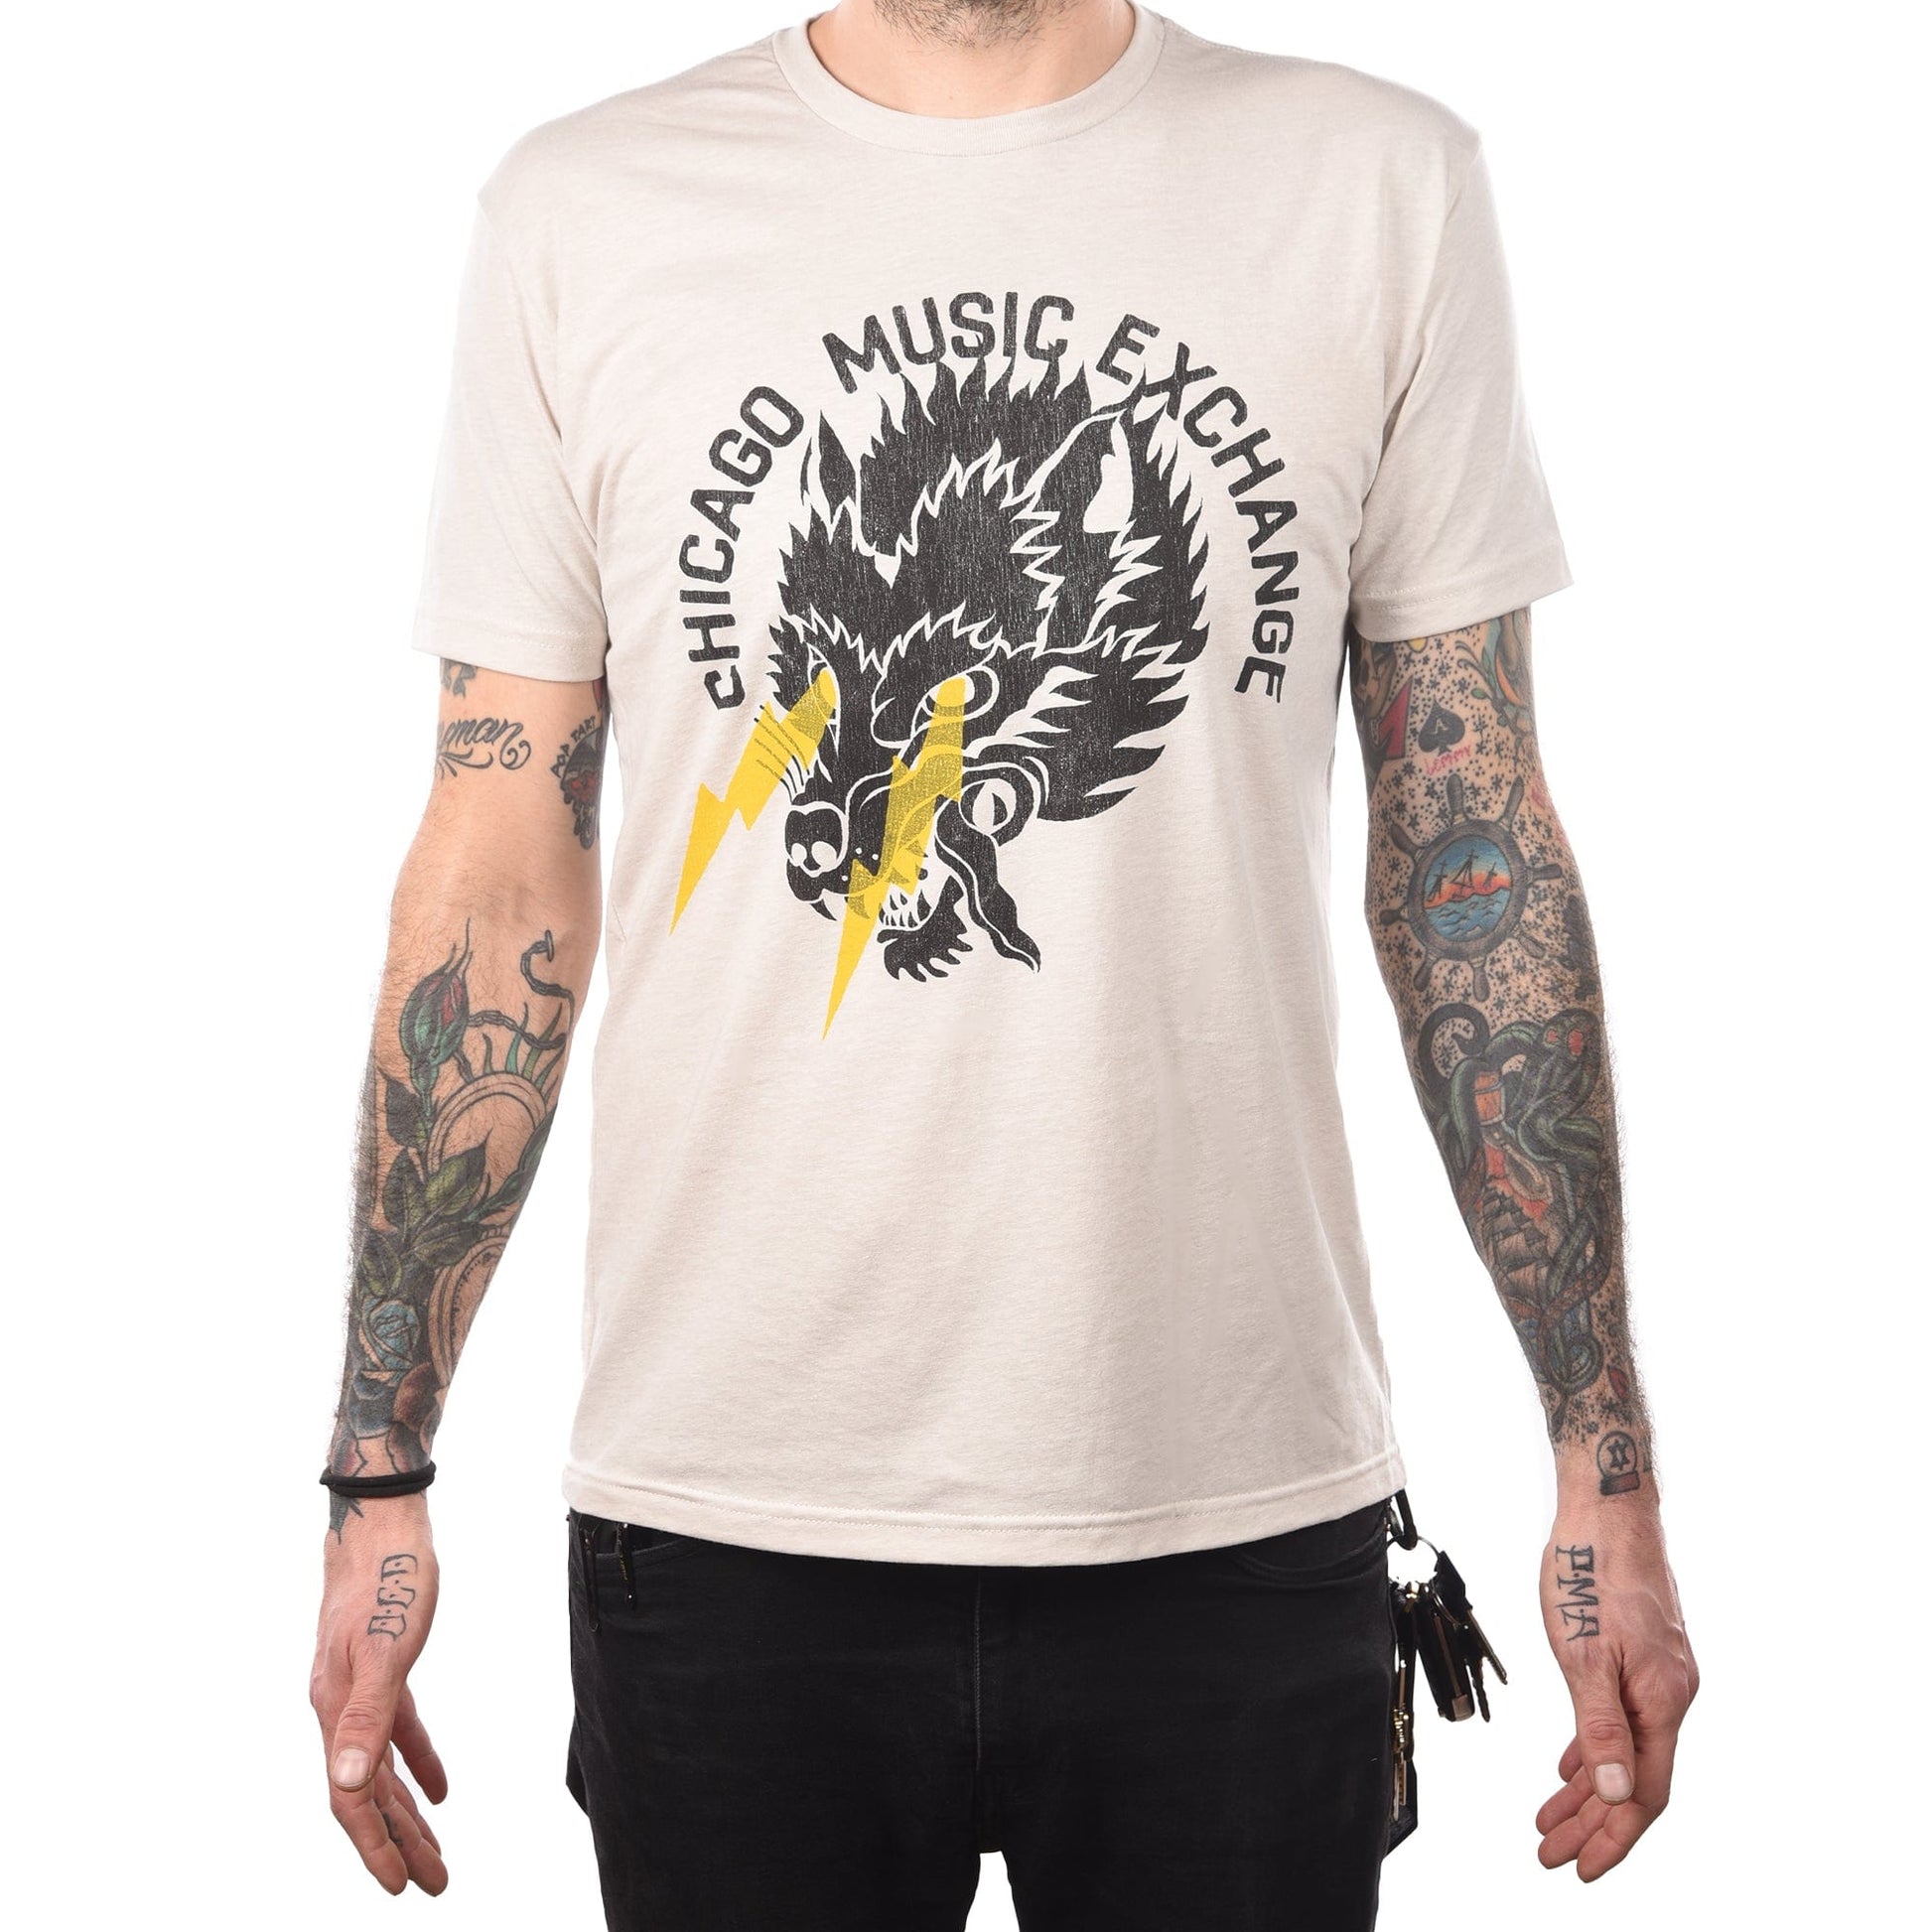 CME Wolf Lightning T-Shirt Accessories / Merchandise